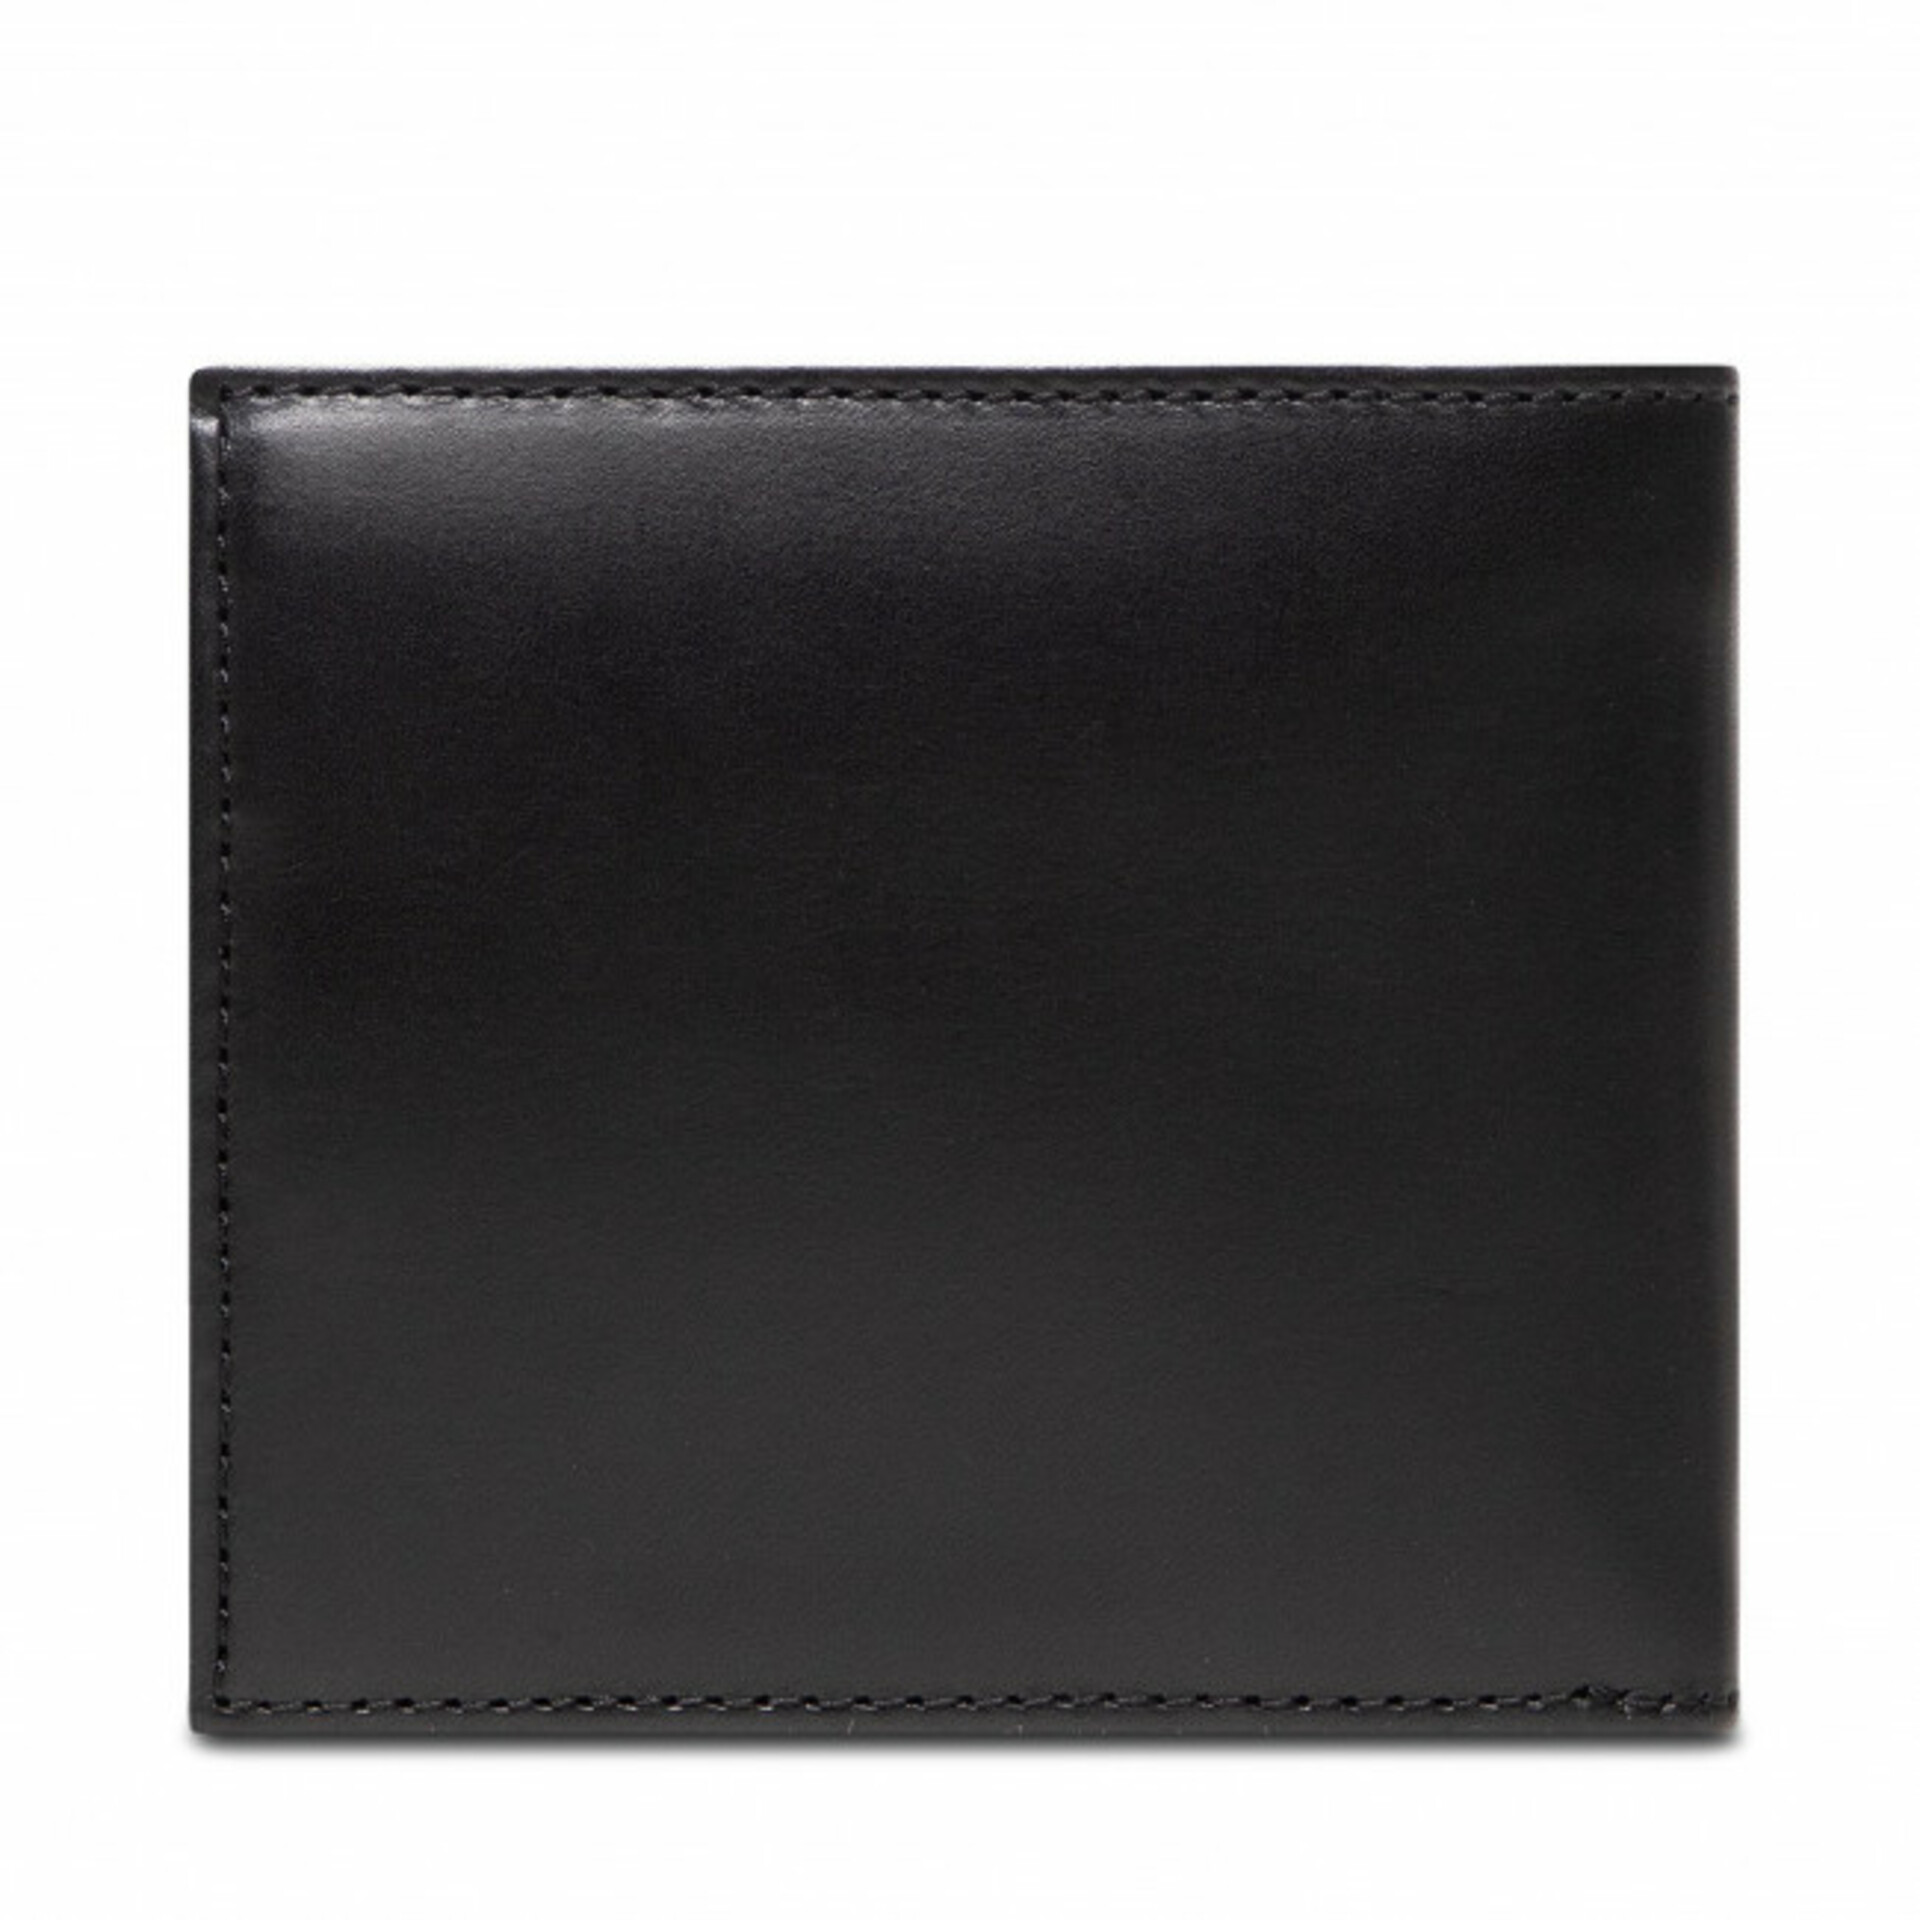 Tommy Hilfiger pánská černá peněženka Casual - OS (BDS)